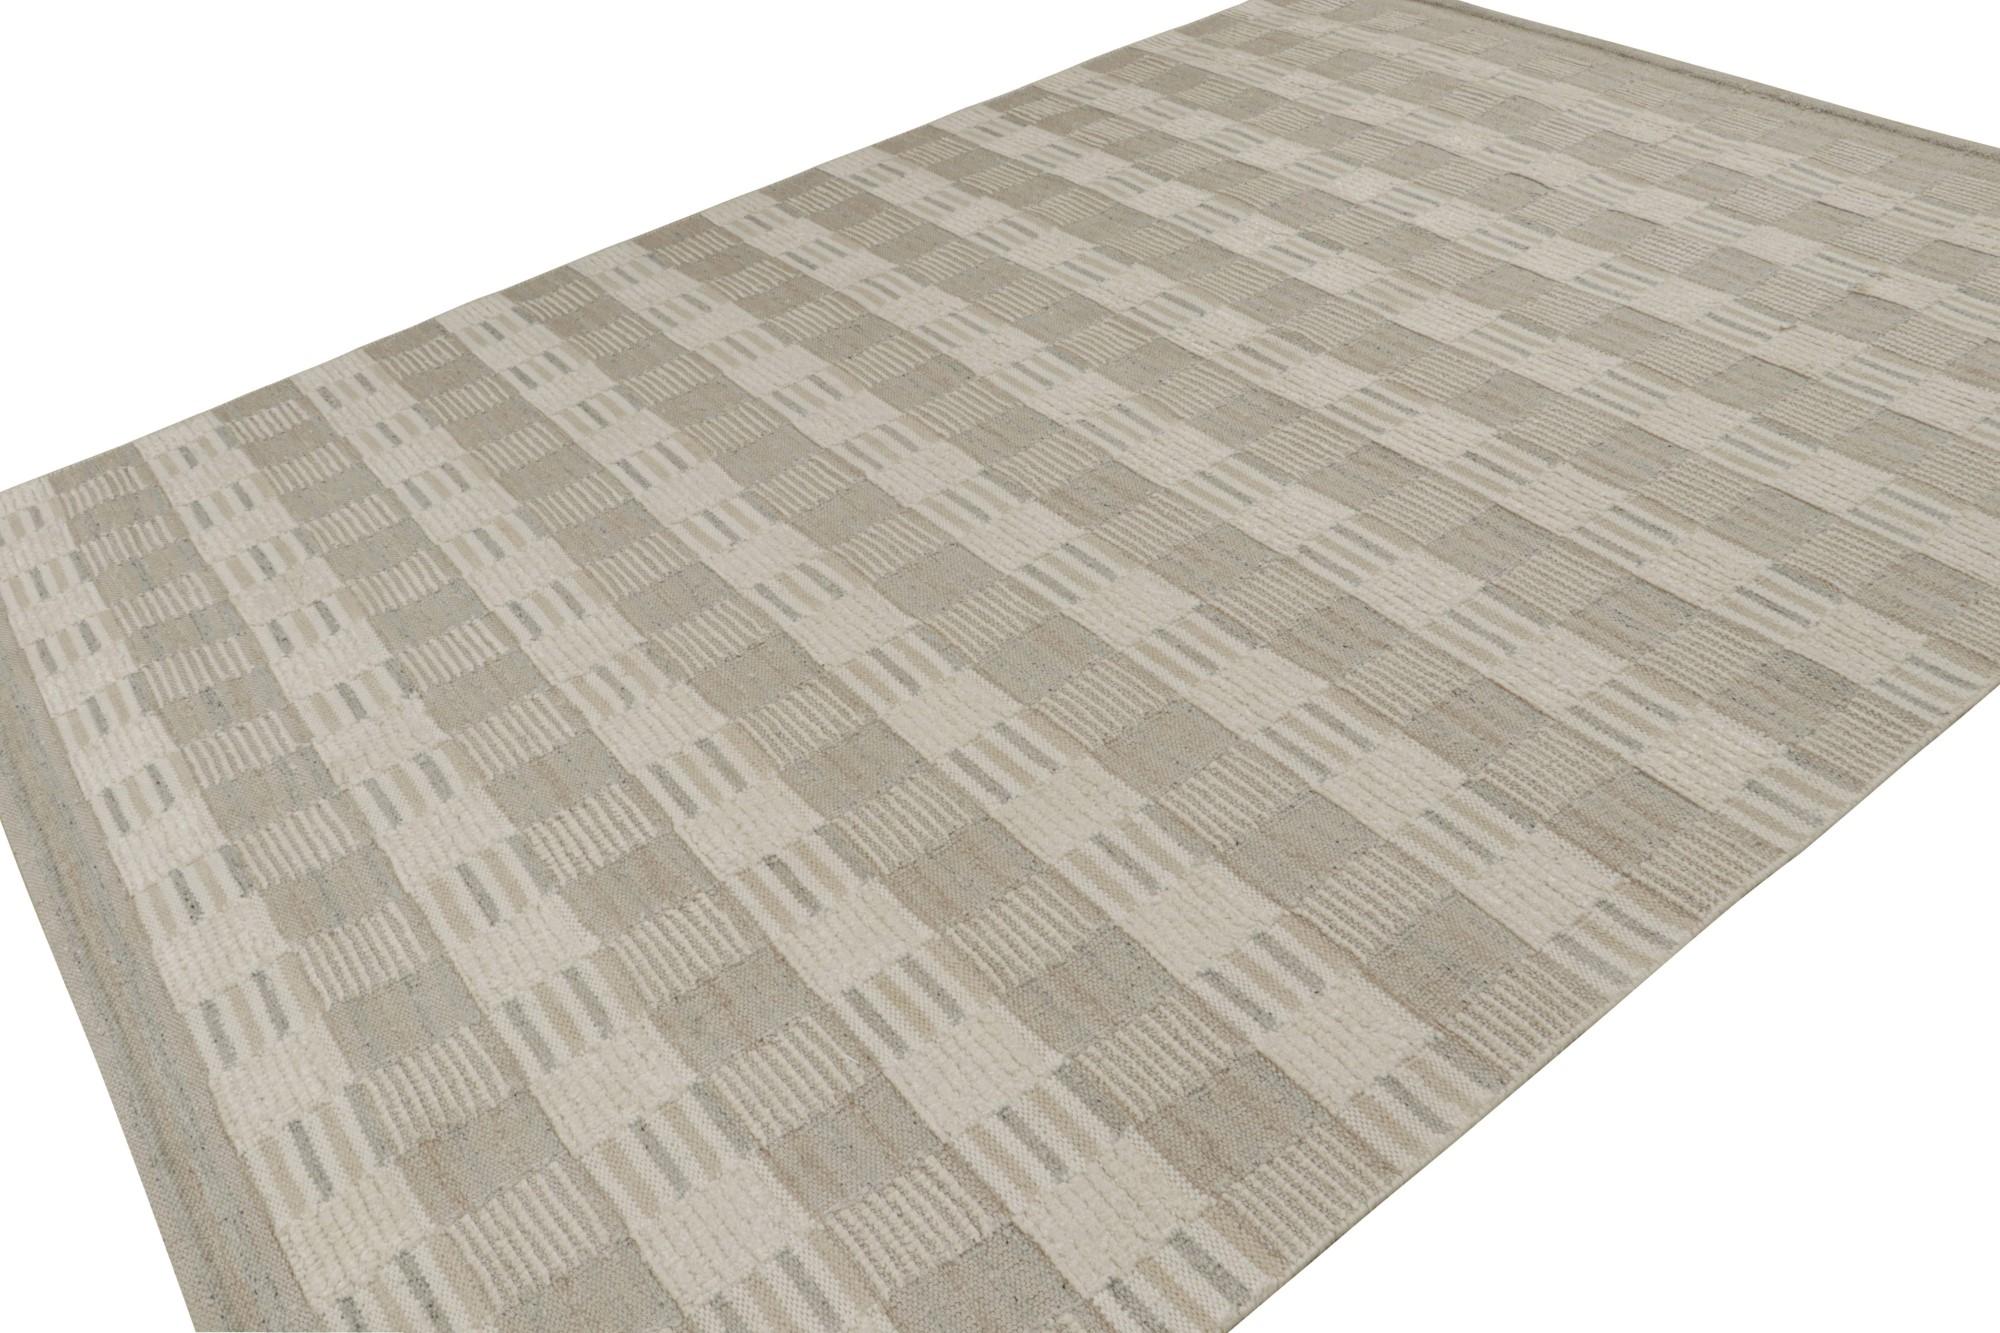 Ce modèle de tapis représente la Collection Scandinavian de Rug & Kilim, une version moderne du style déco suédois des tapis Rollakan et Rya. 

Sur le Design :

Le tapis 9x12 présente un jeu de texture haut-bas avec des poils et un tissage plat.